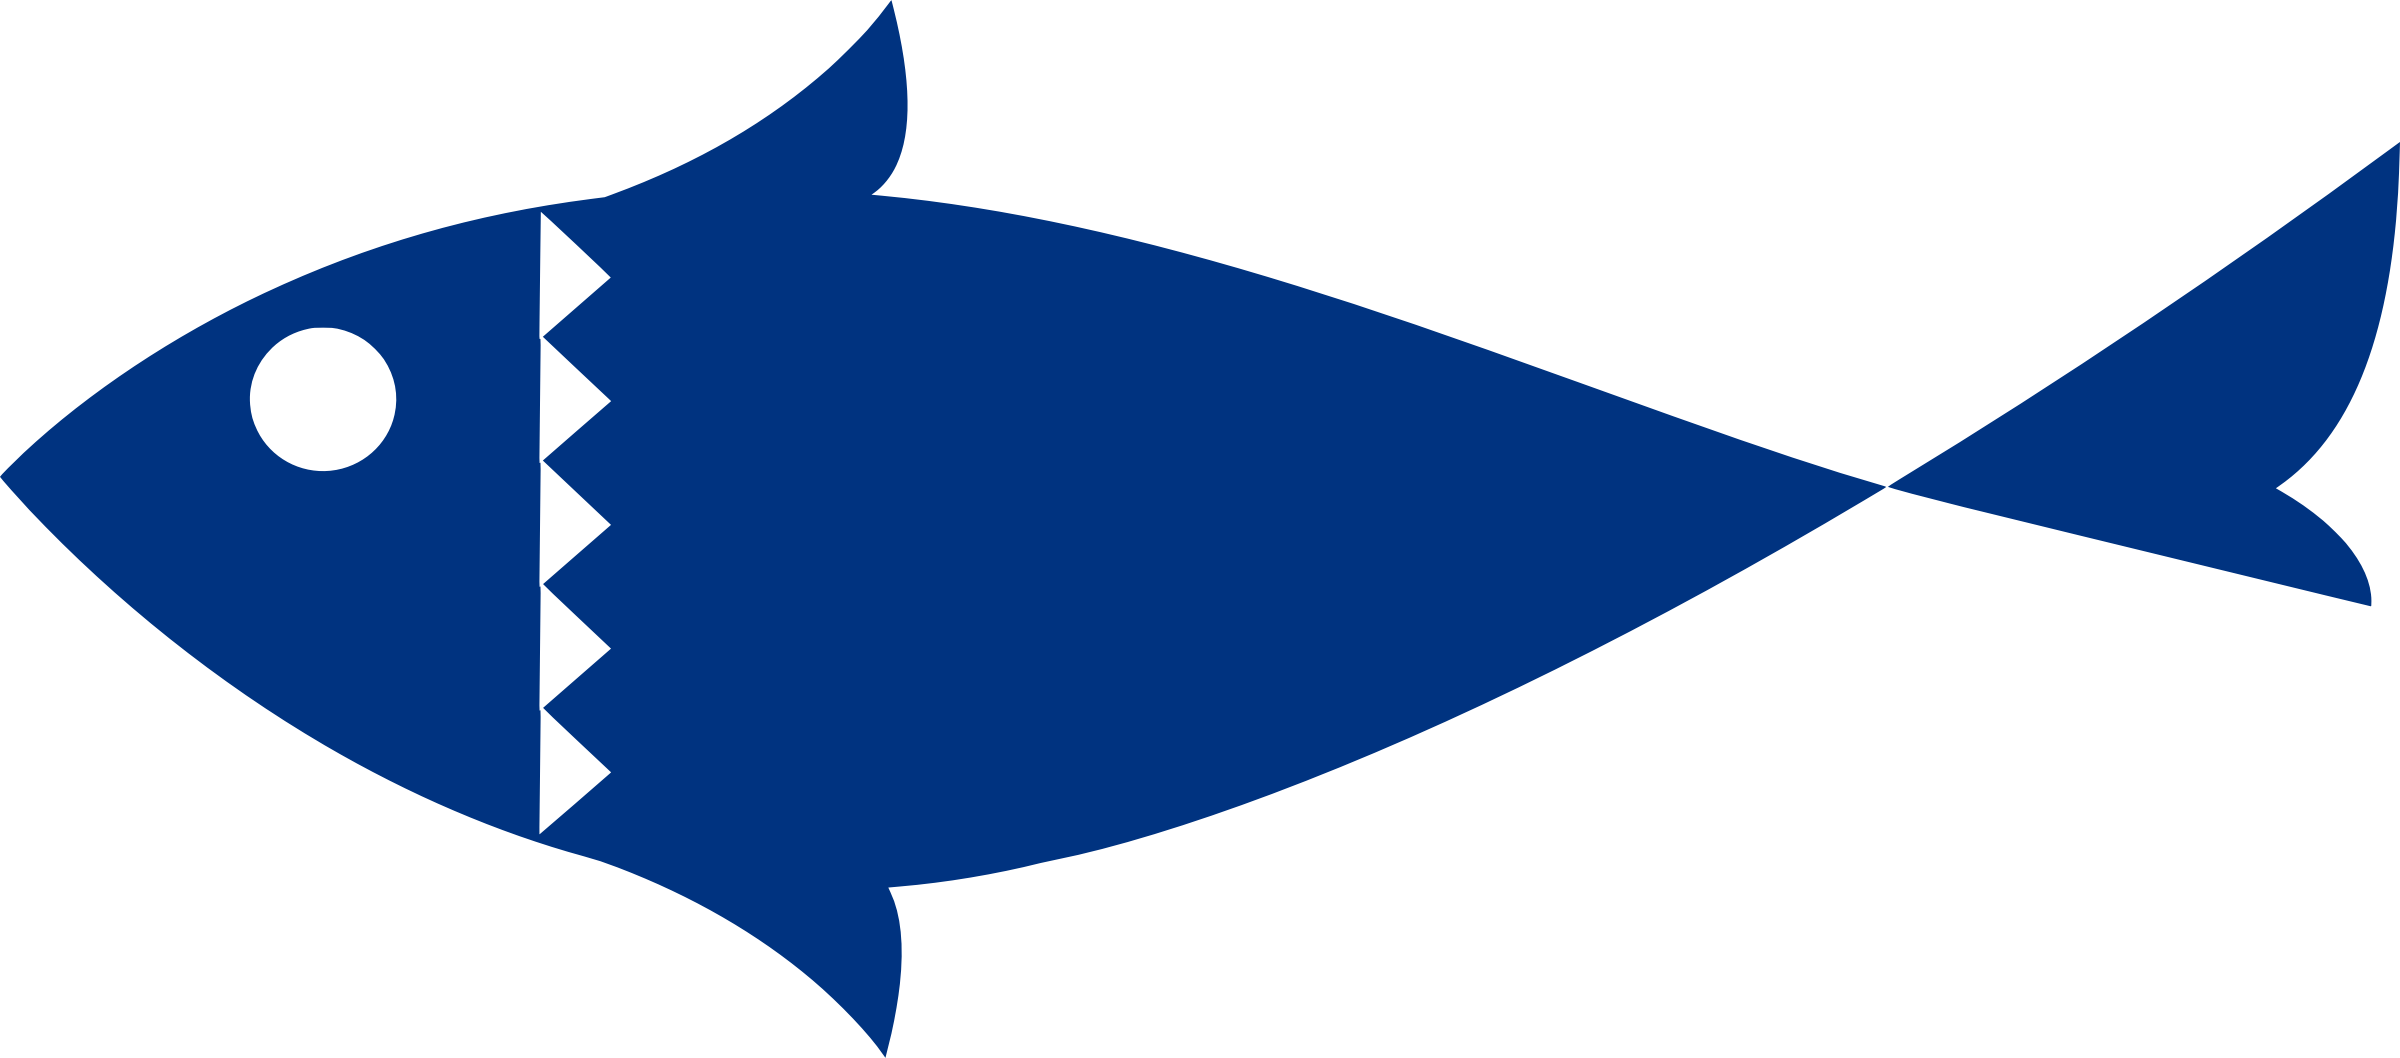 Big Image - Blue Fish Clipart (2400x1058)